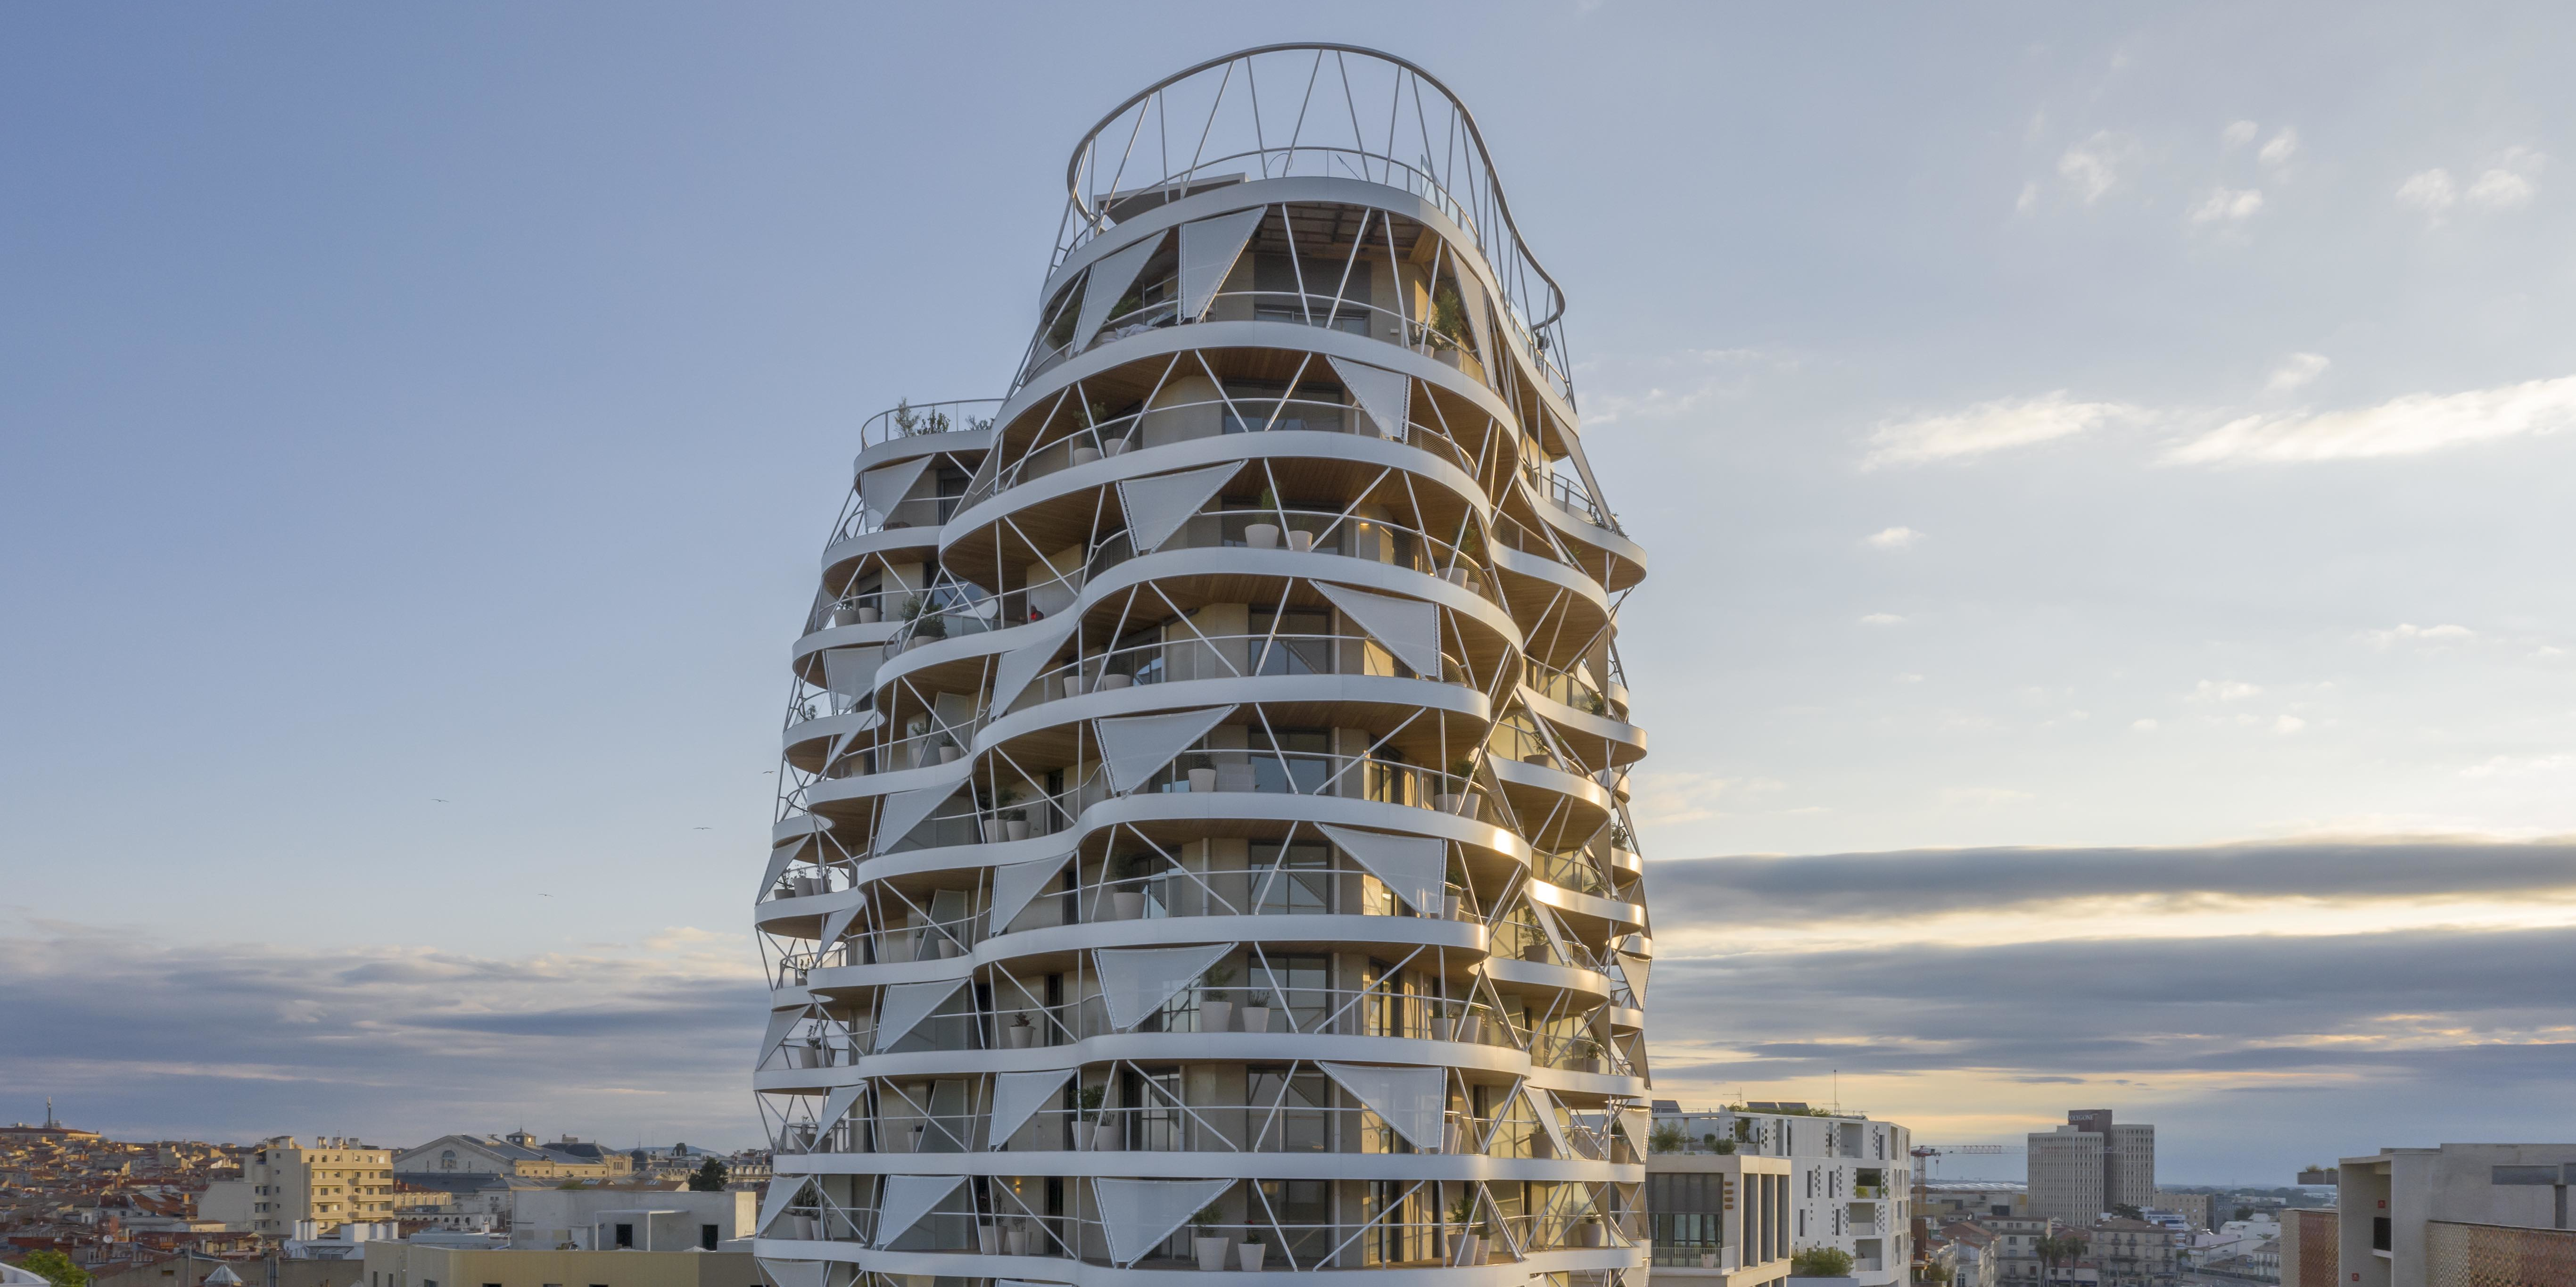 Renouvellement urbain : le totémique Higher Roch (16 étages) est terminé en coeur de ville de Montpellier